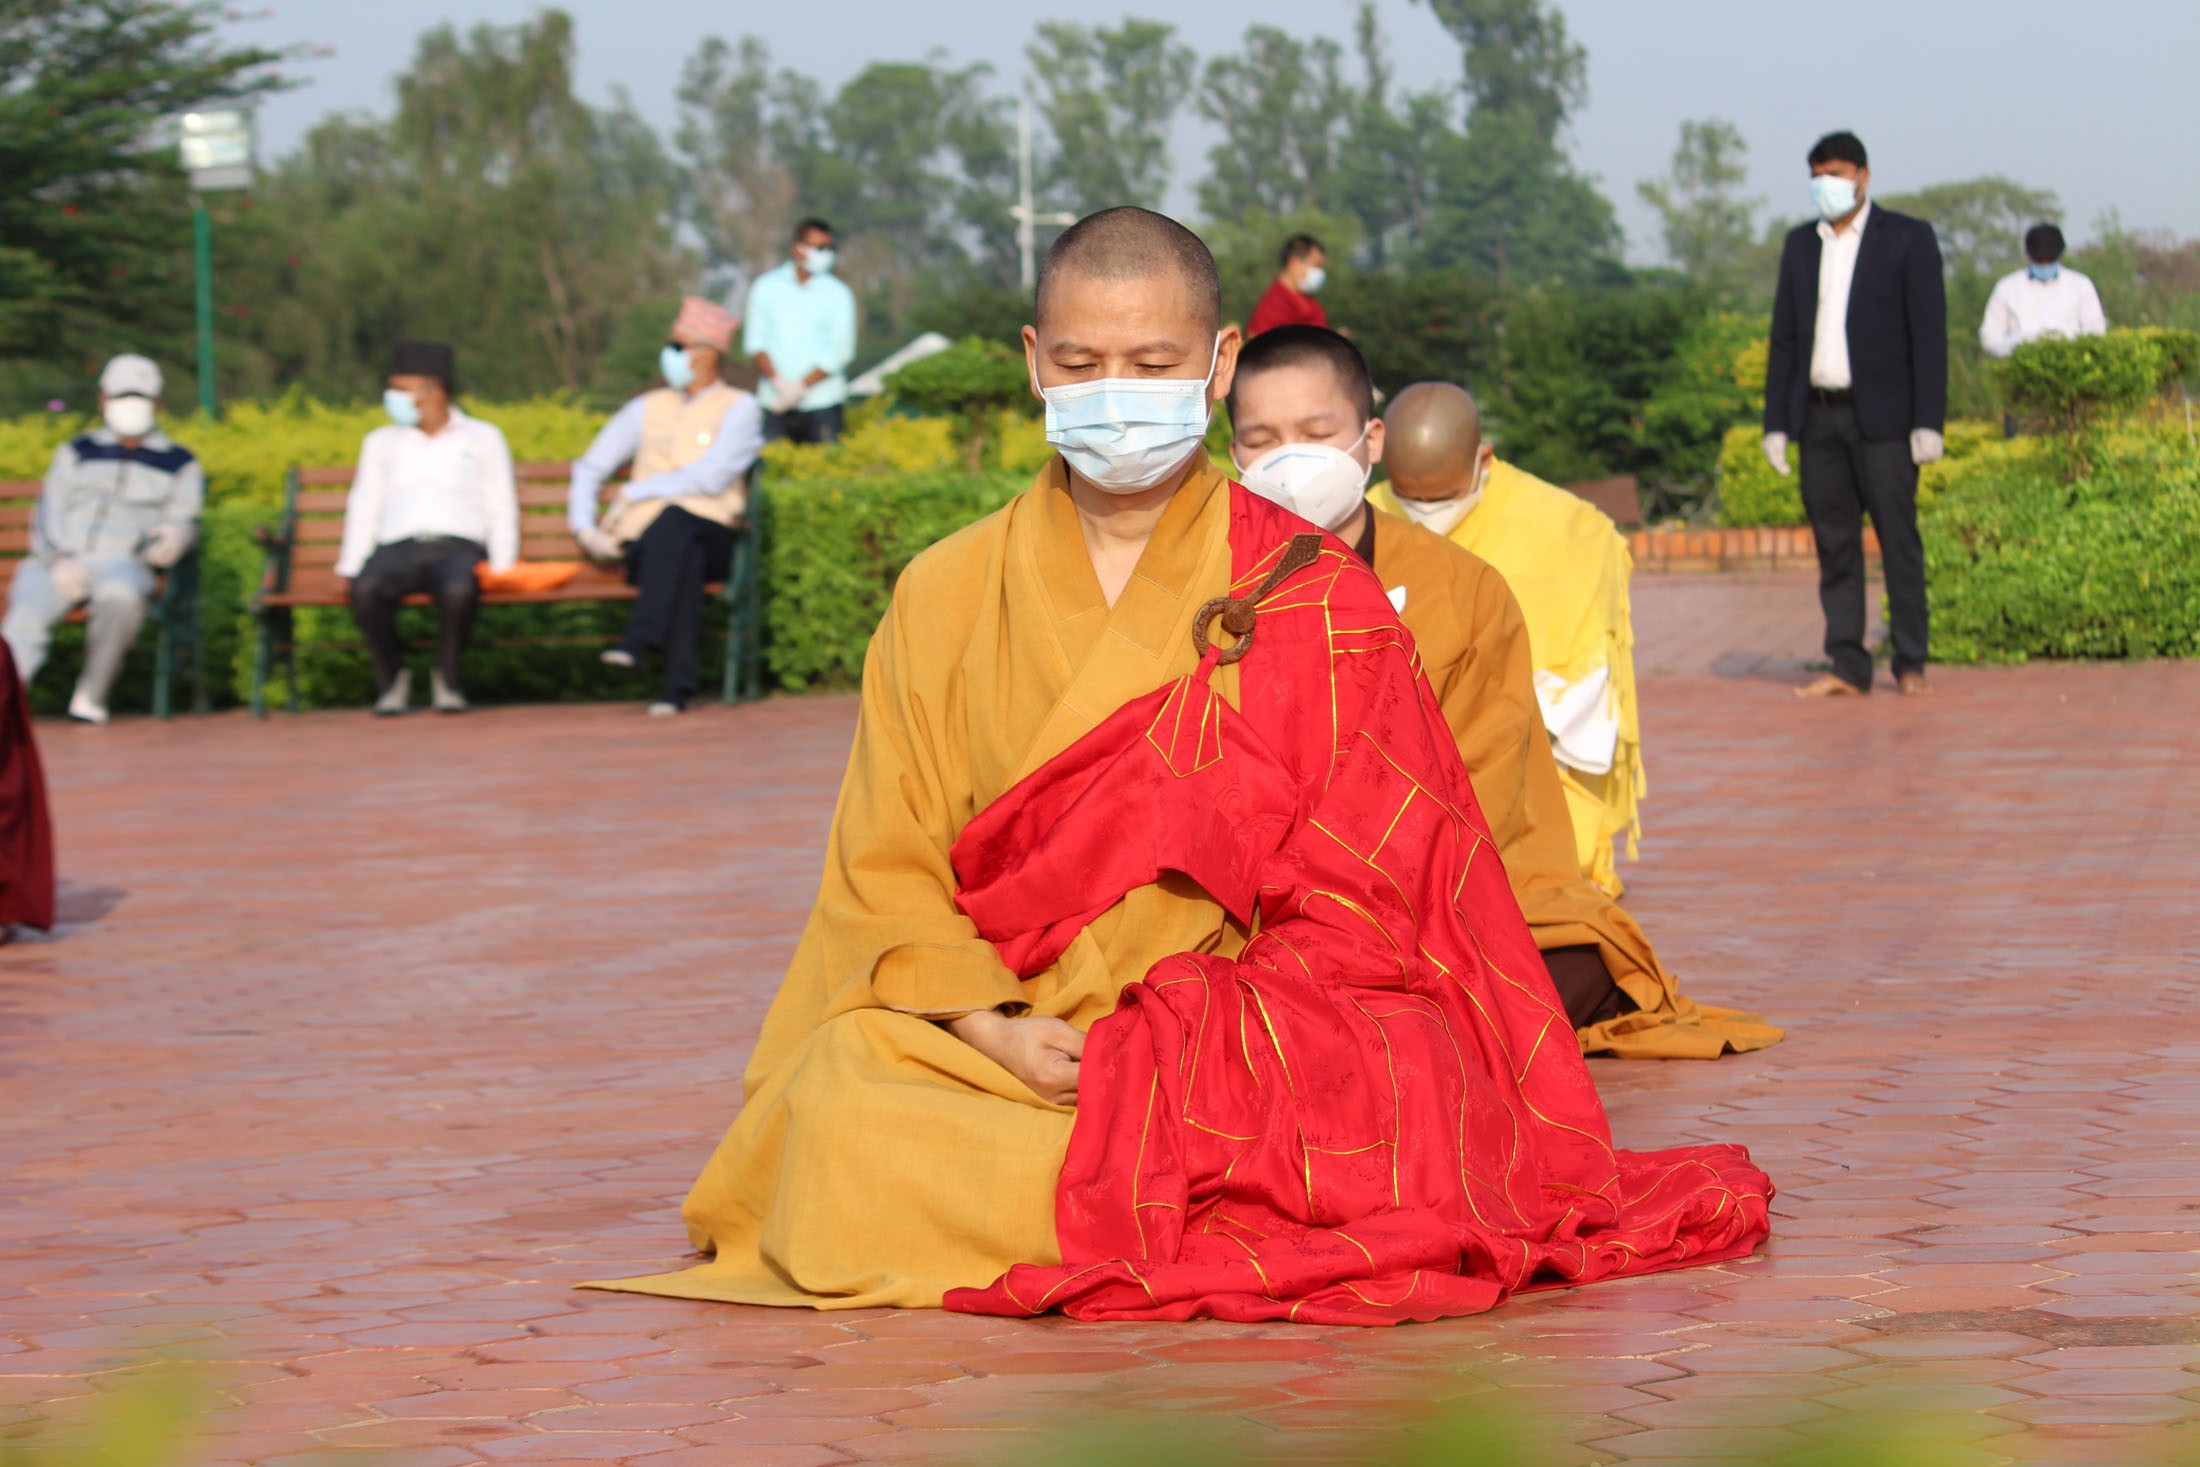 बुद्ध जन्मस्थल लुम्बिनीमा बुद्ध पूर्णिमाको अवसरमा मास्क लगाएर प्रार्थना गर्दै भिक्षुहरु । सबै तस्विरहरु : सी.पी. खनाल